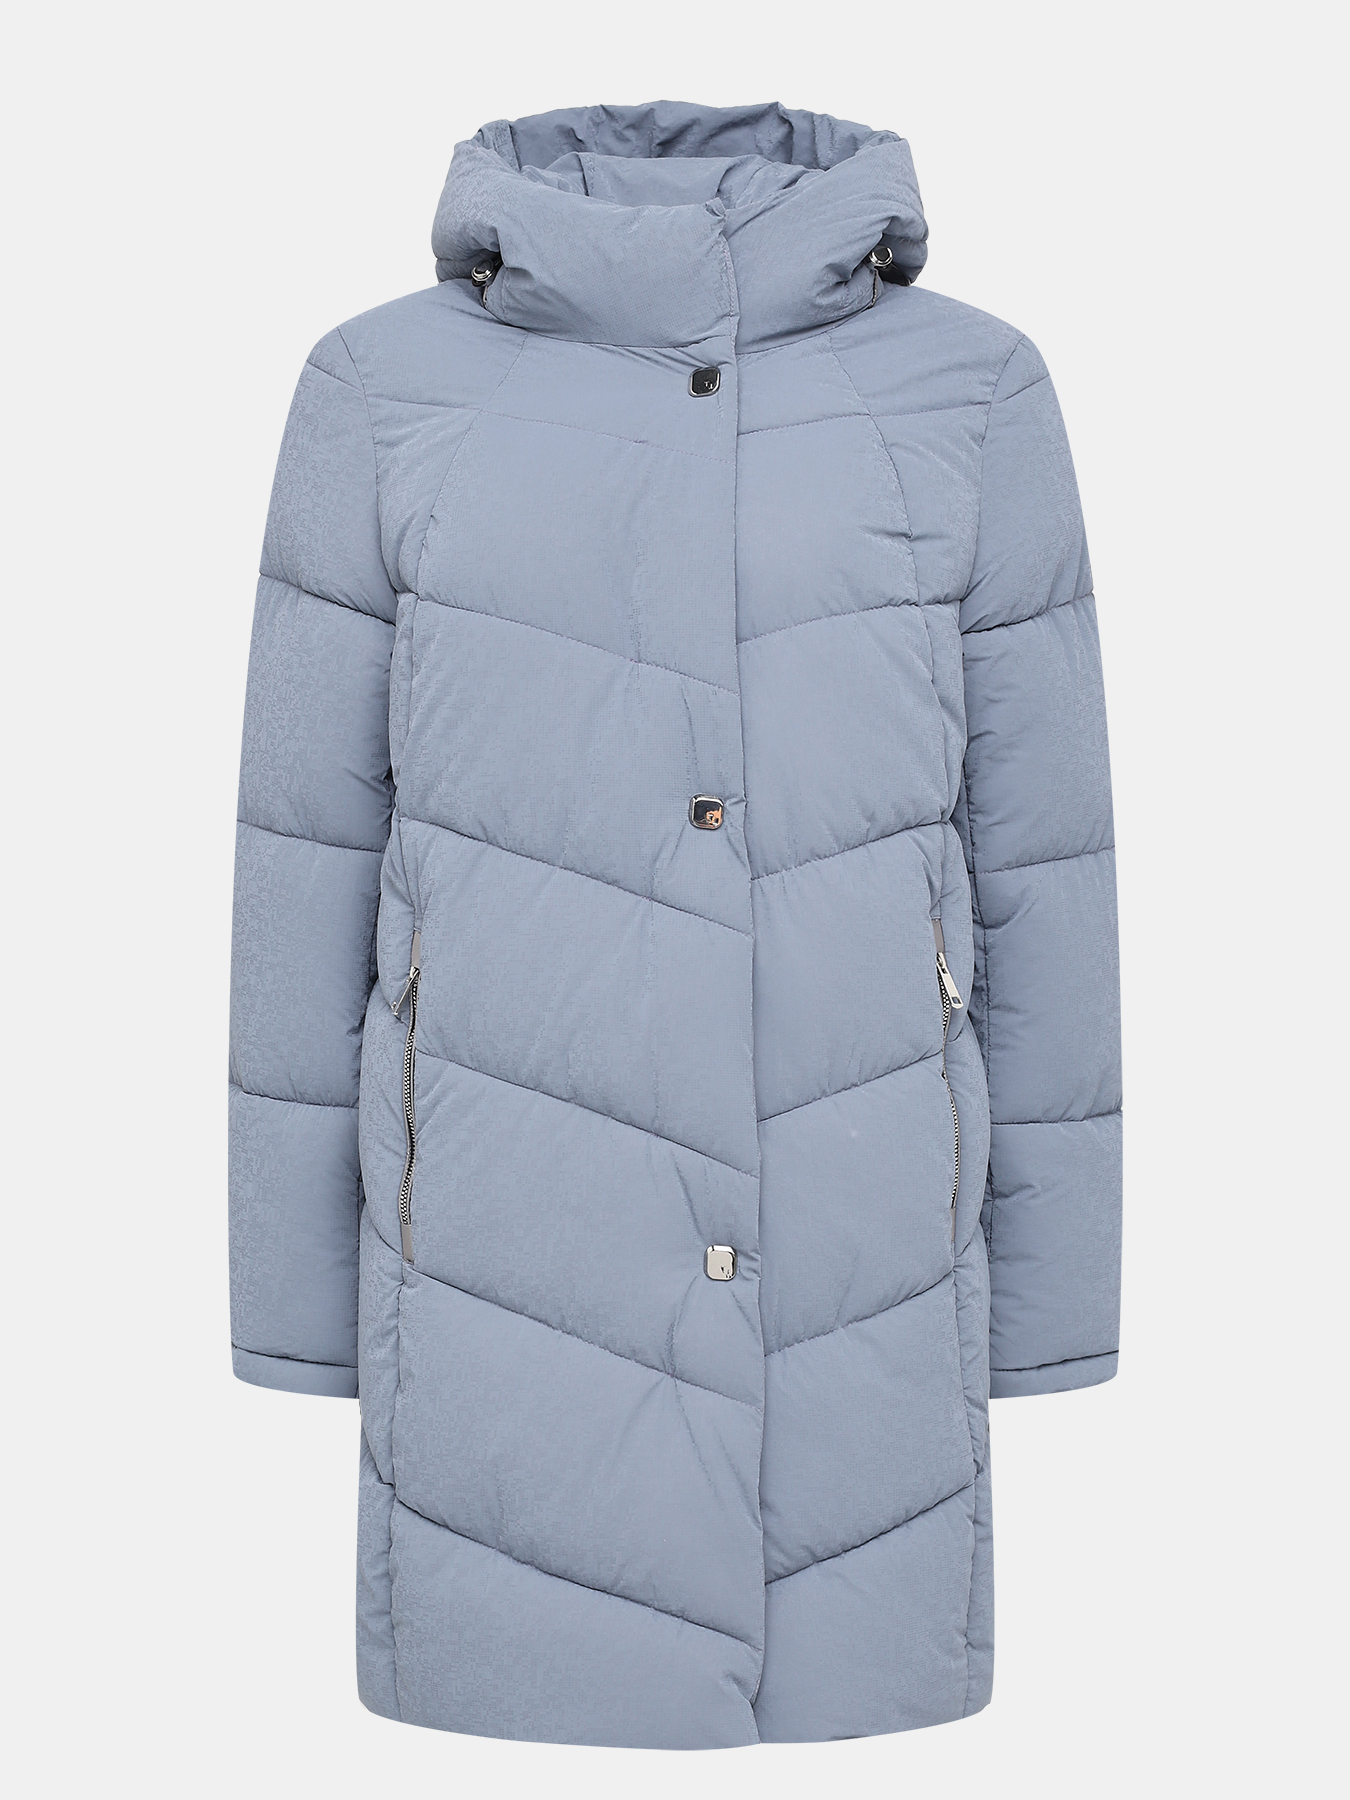 Пальто зимнее Maritta 433624-026, цвет голубой, размер 50